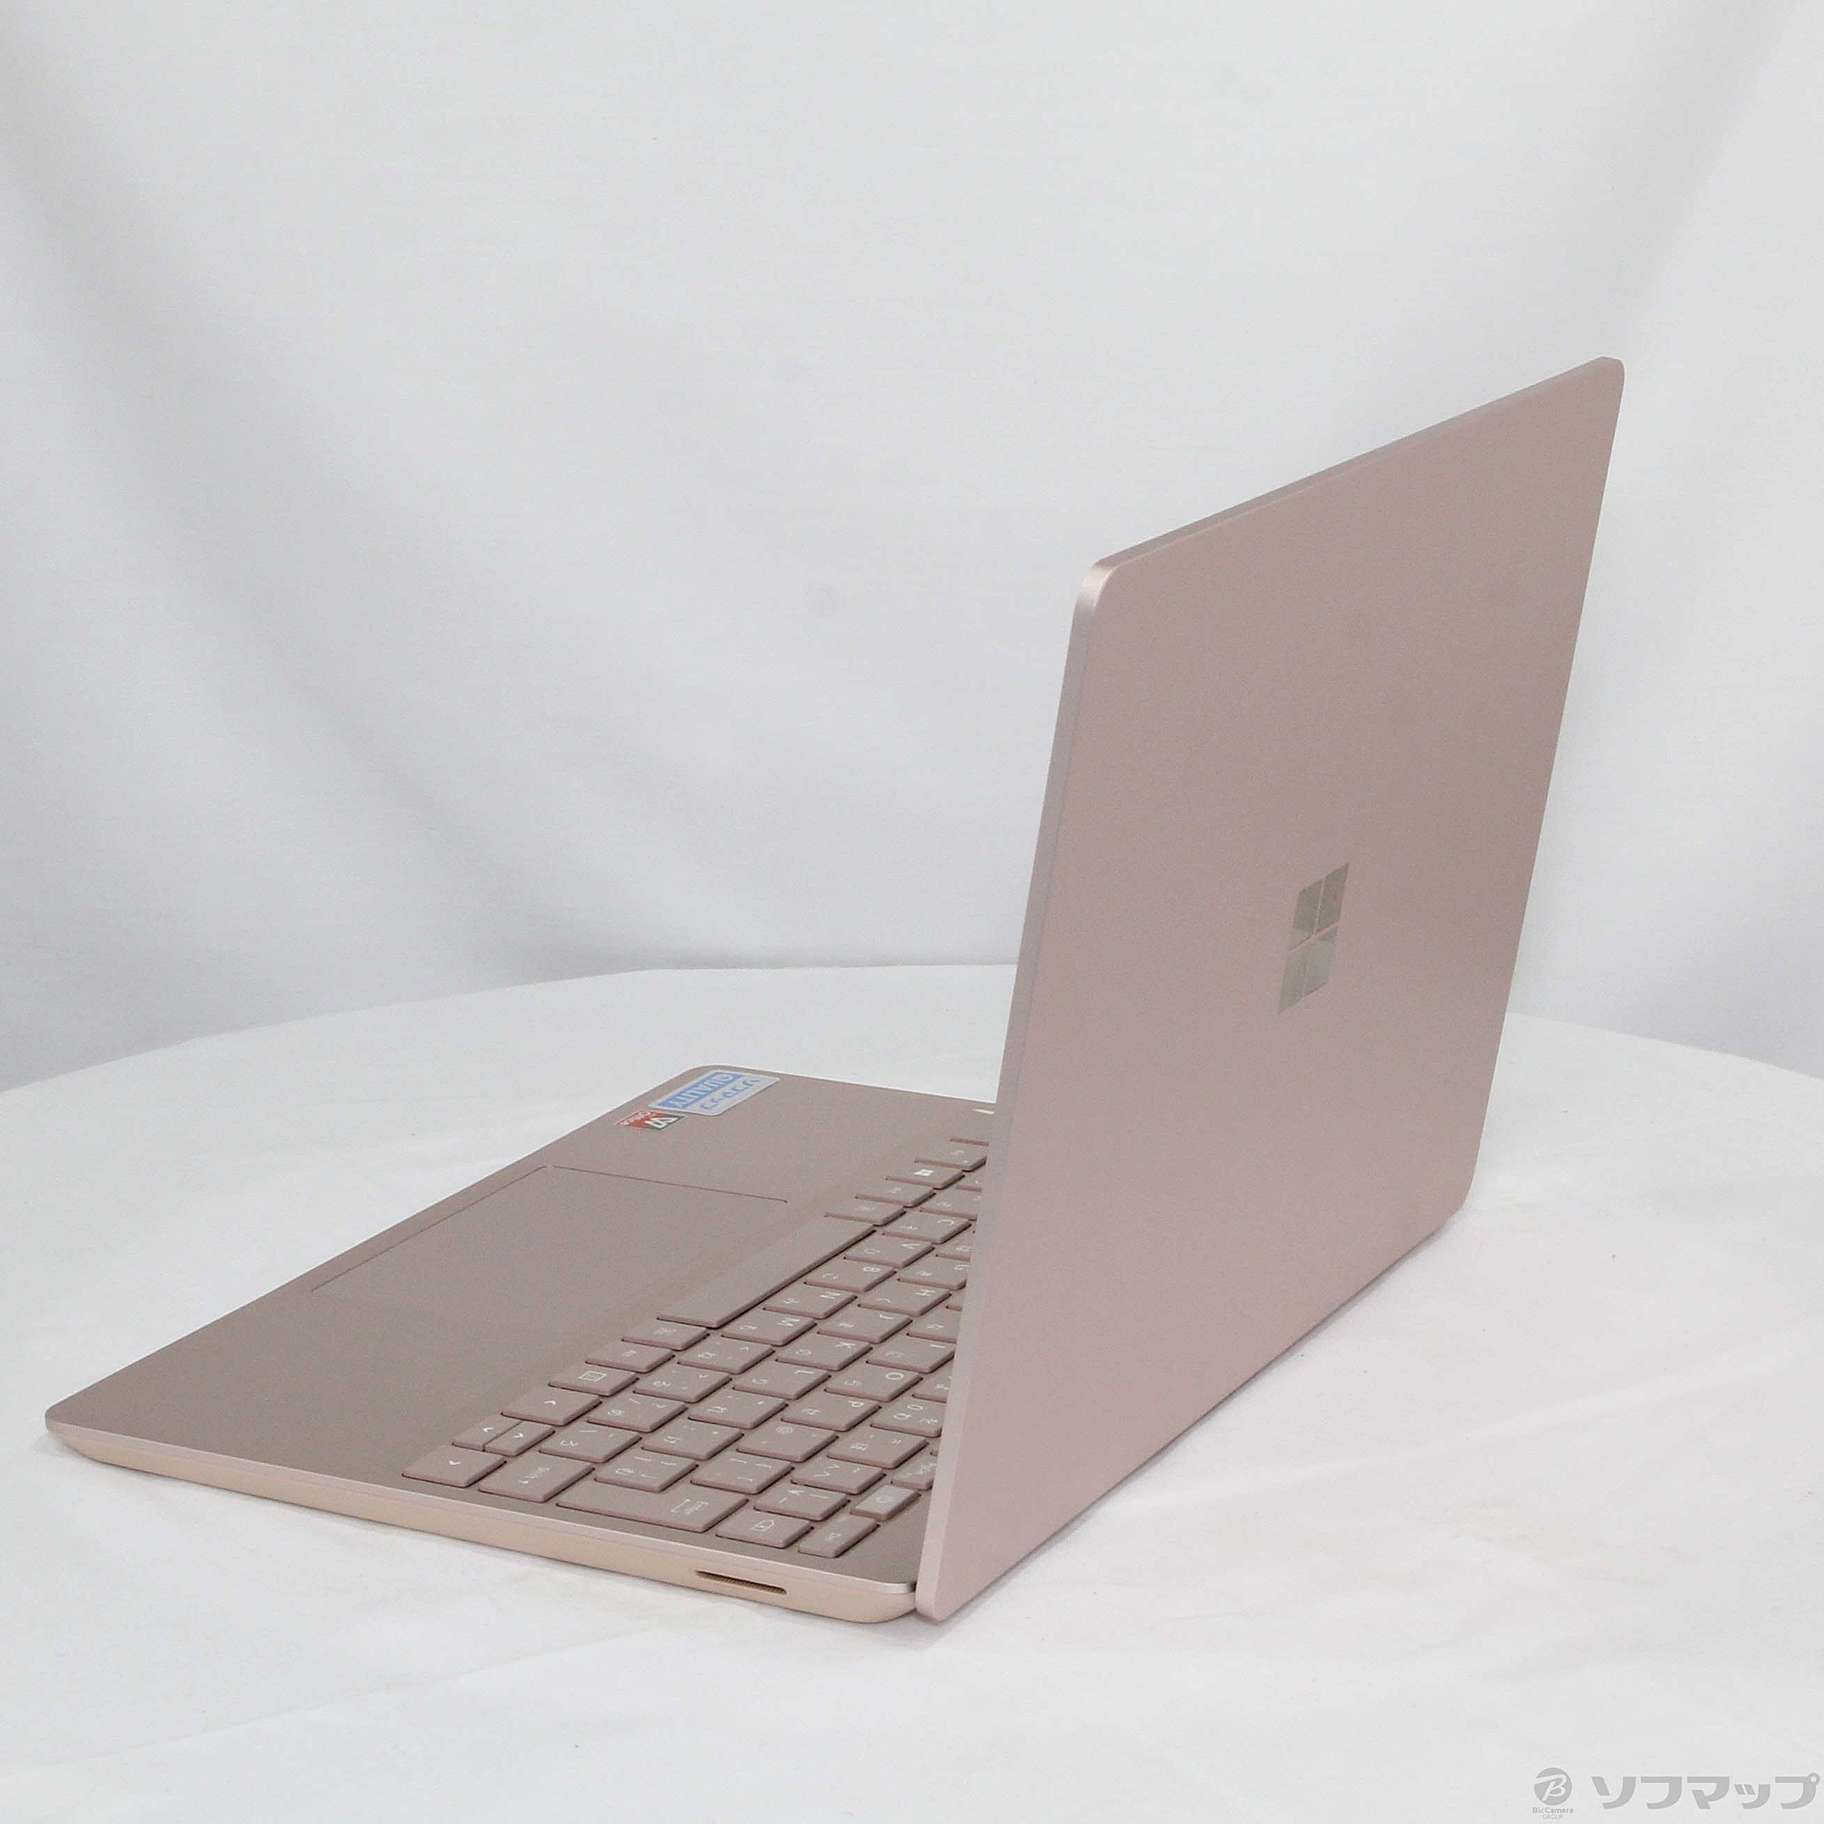 マイクロソフト THH-00045 Surface Laptop Go